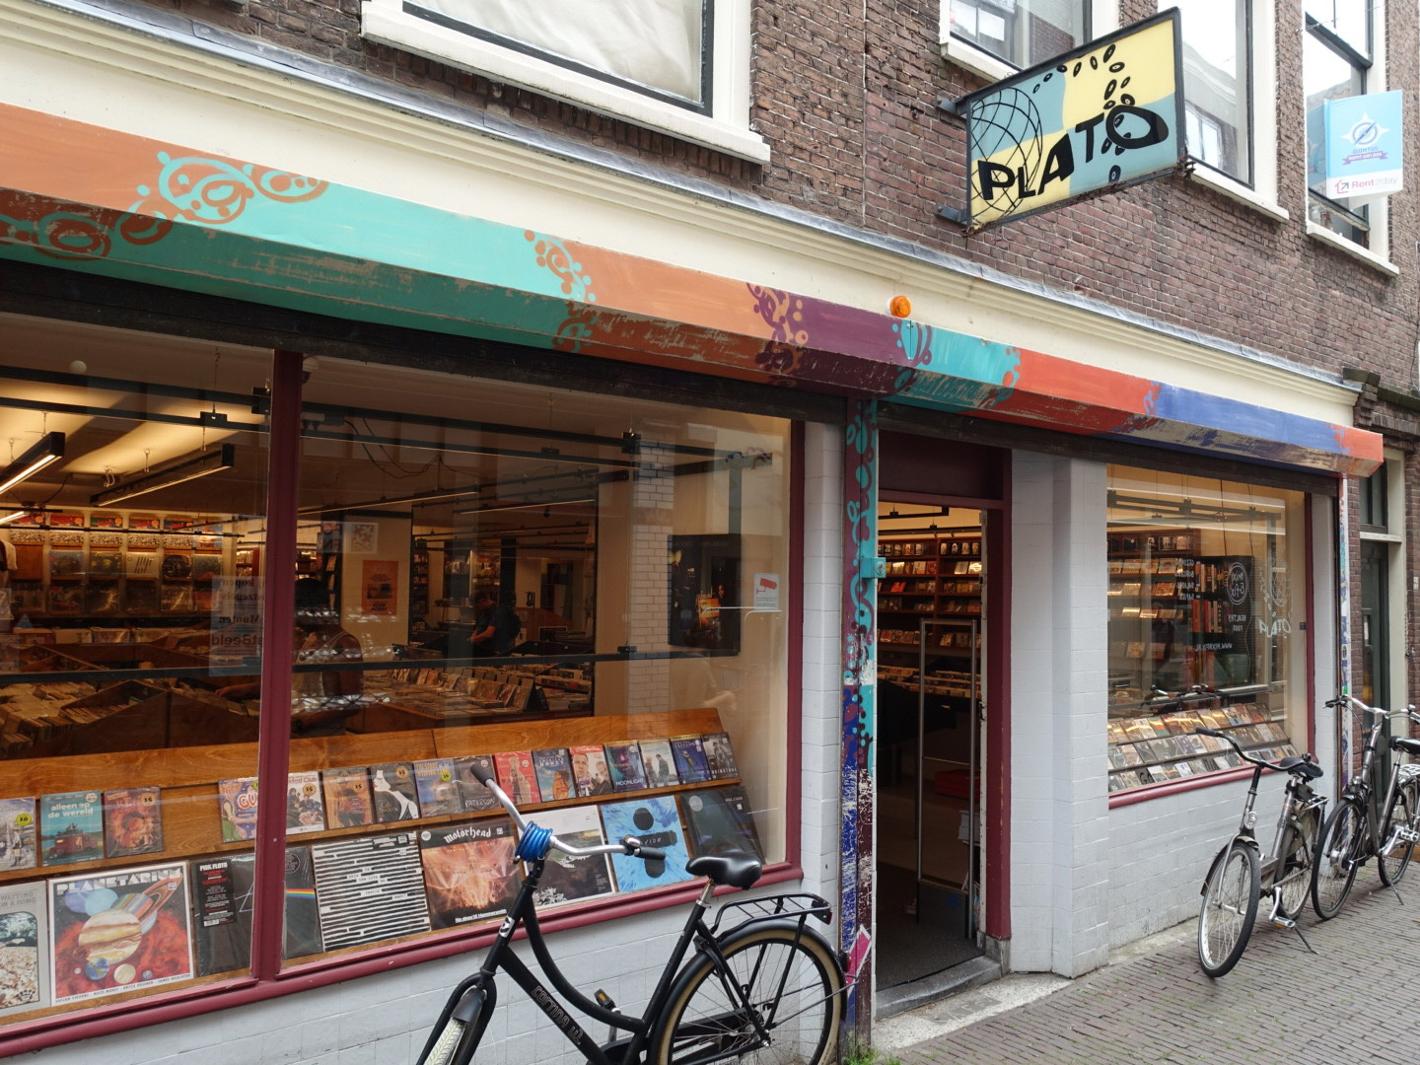 Foto Plato Leiden in Leiden, Einkaufen, Hobby & freizeit - #1